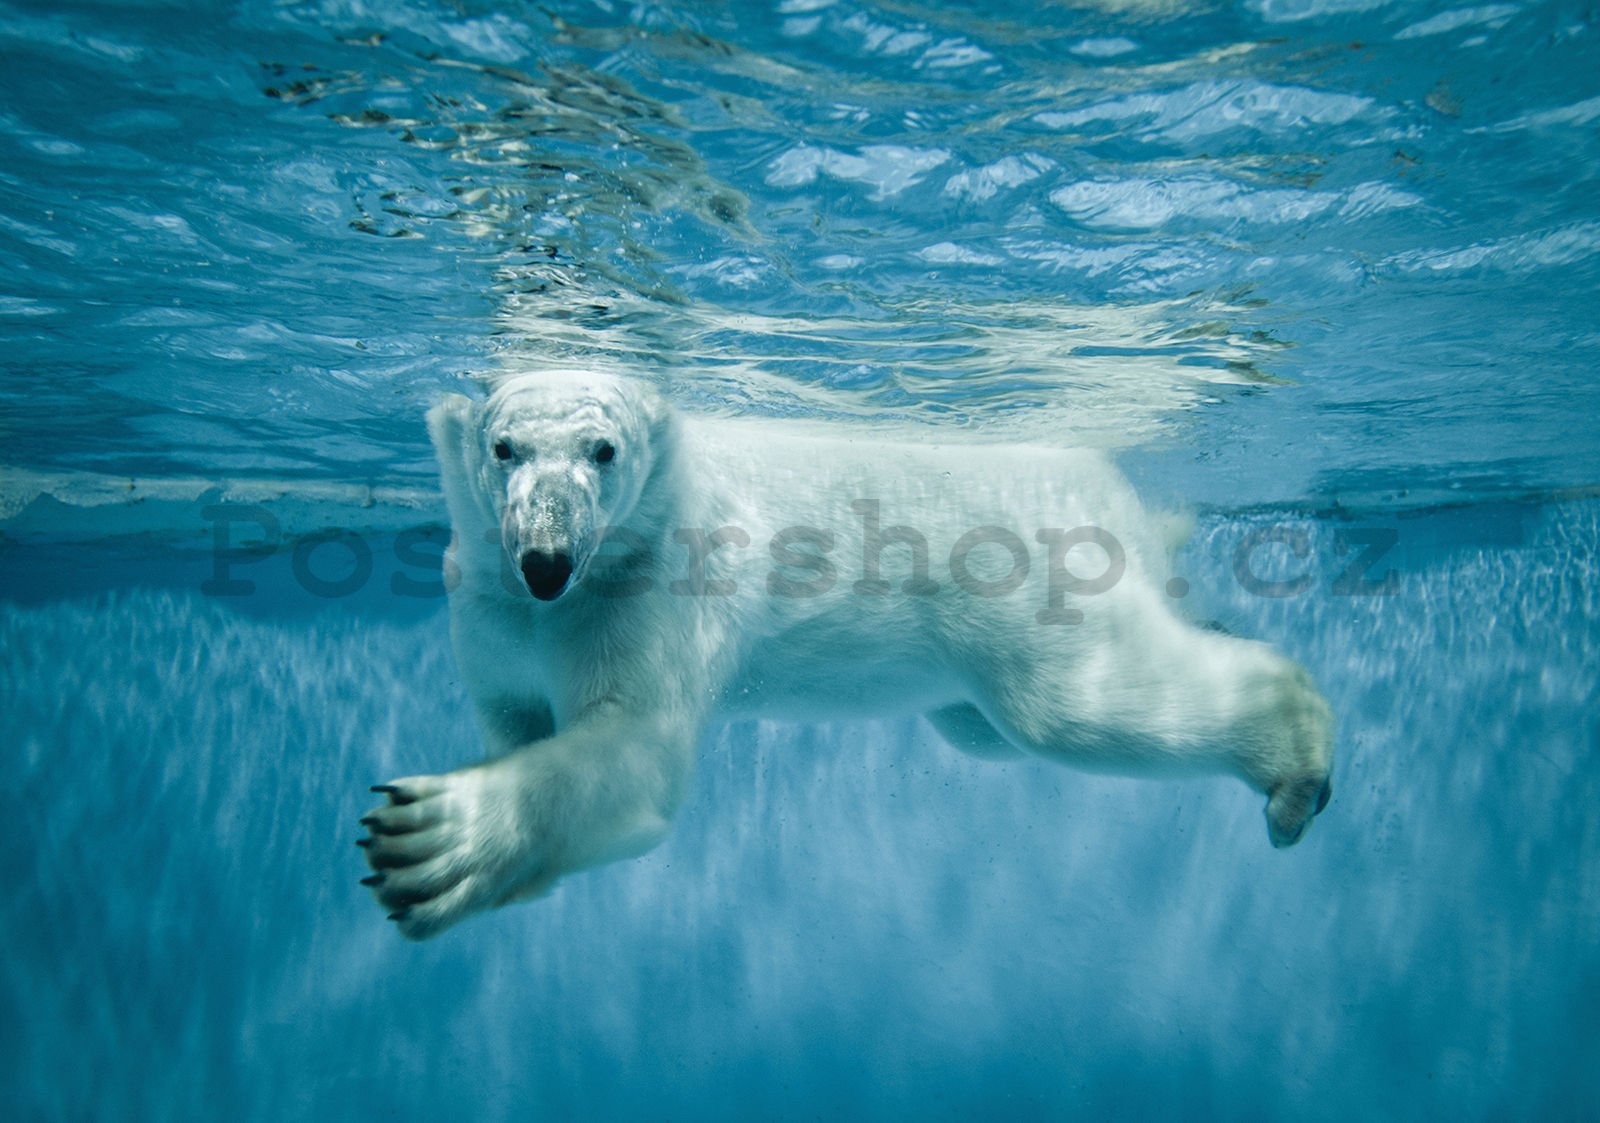 Fototapeta vliesová: Lední medvěd (1) - 416x254 cm